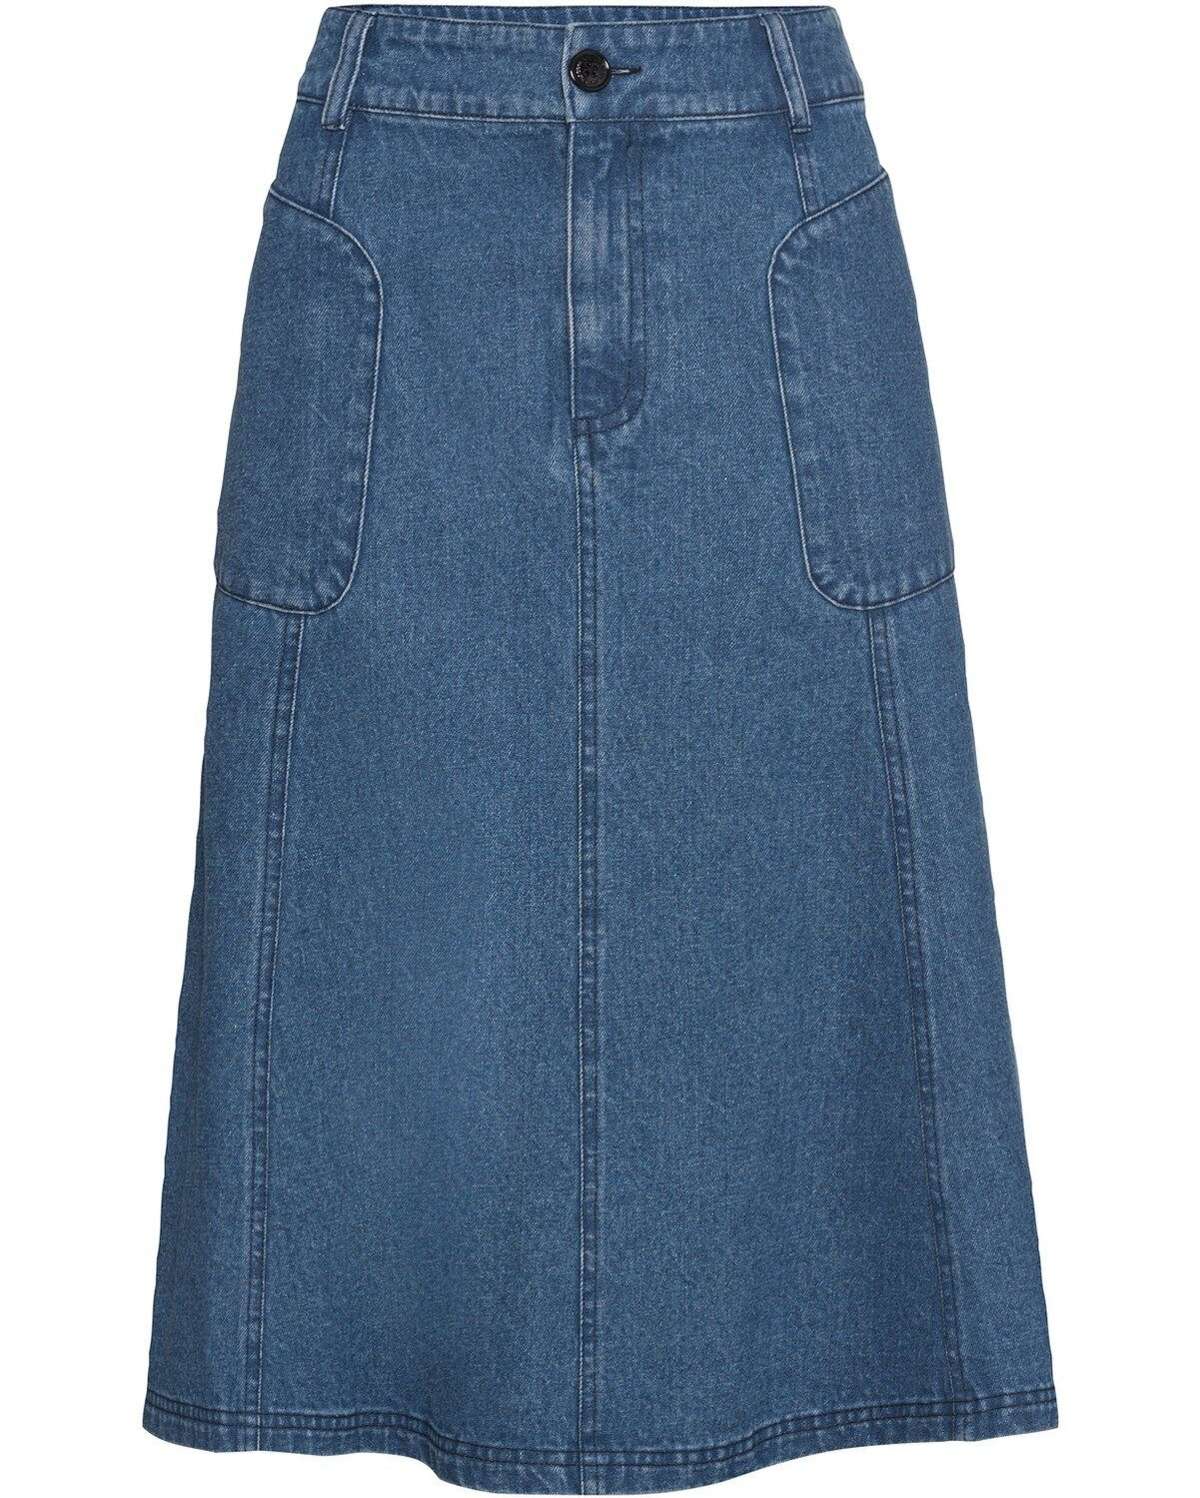 Джинсовая юбка Широкая джинсовая юбка